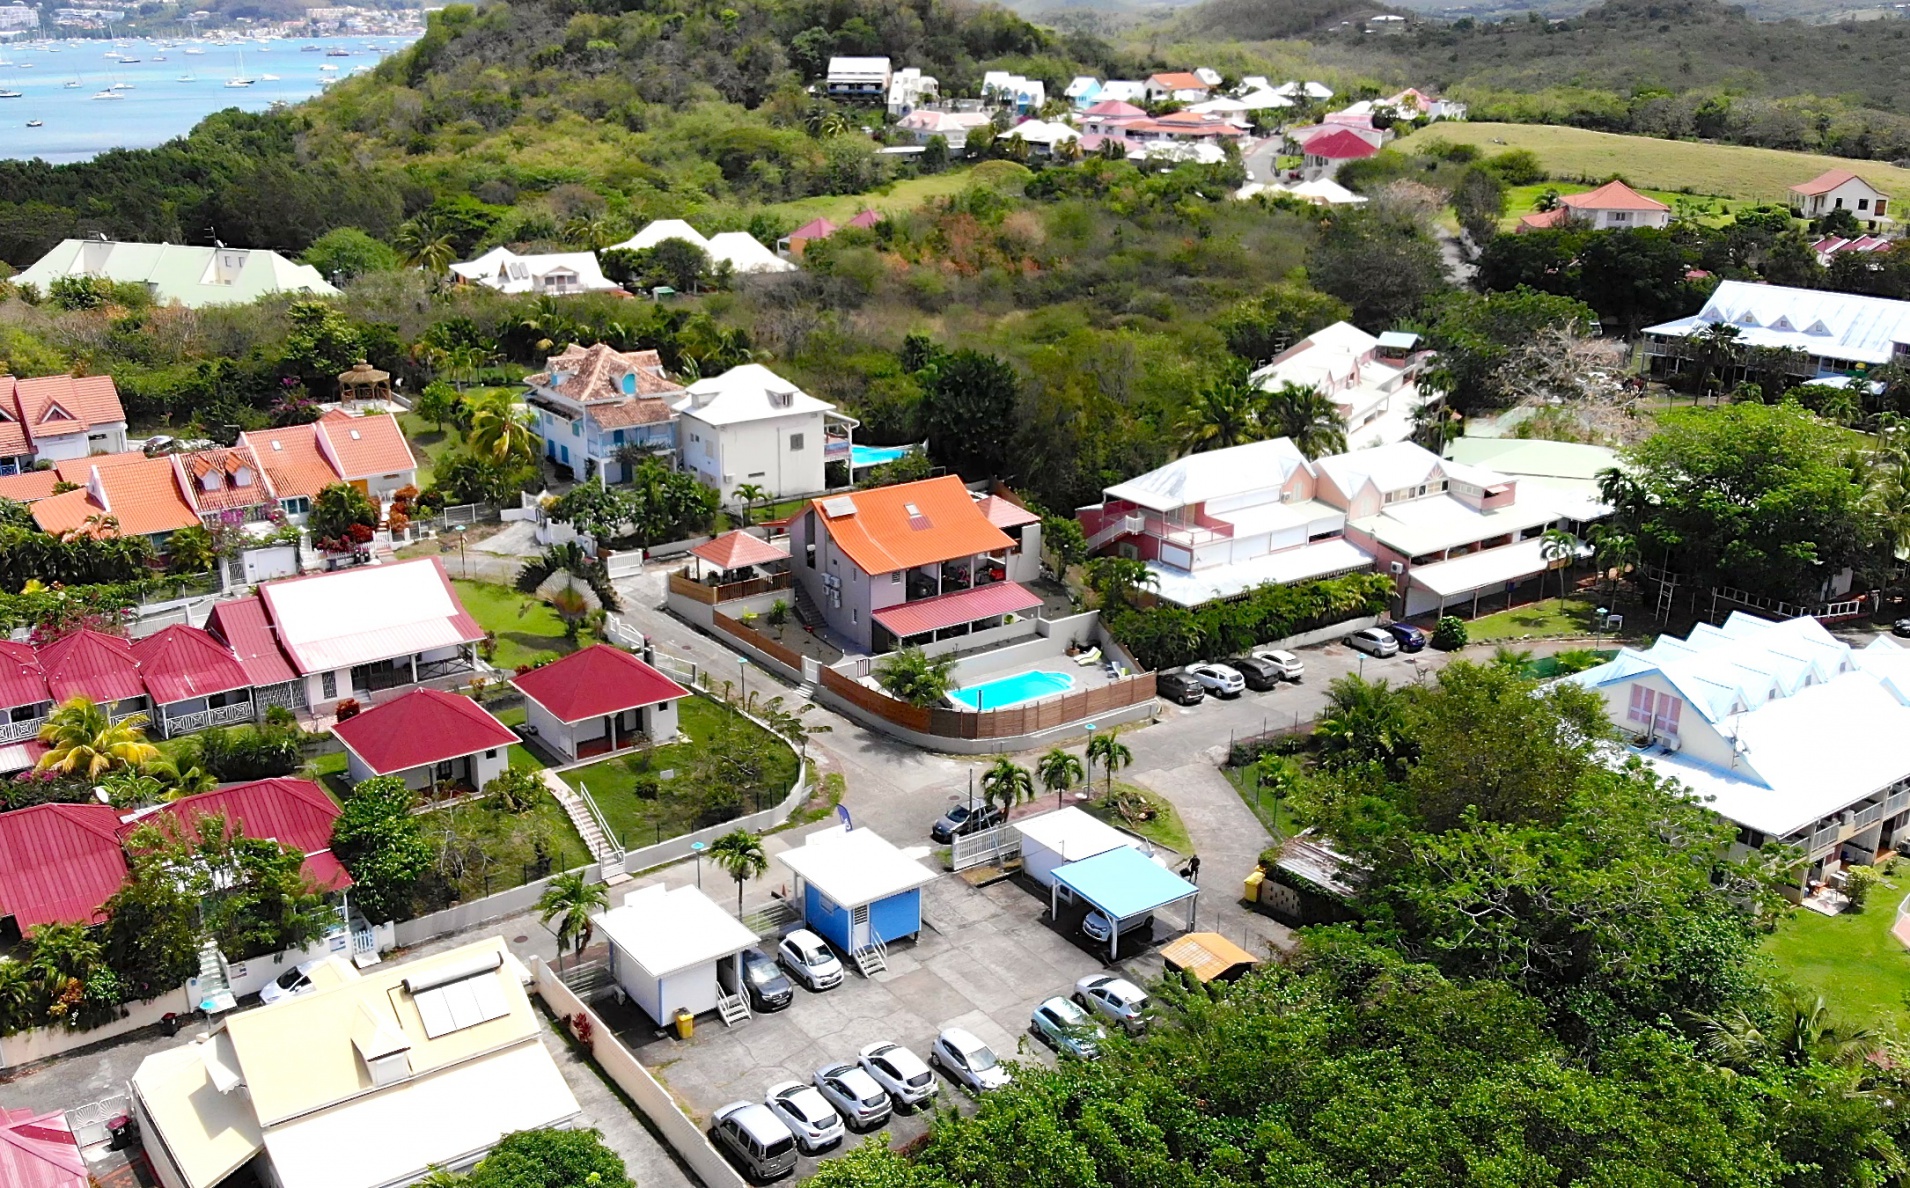 Location de vacances en Martinique - Résidence Coco